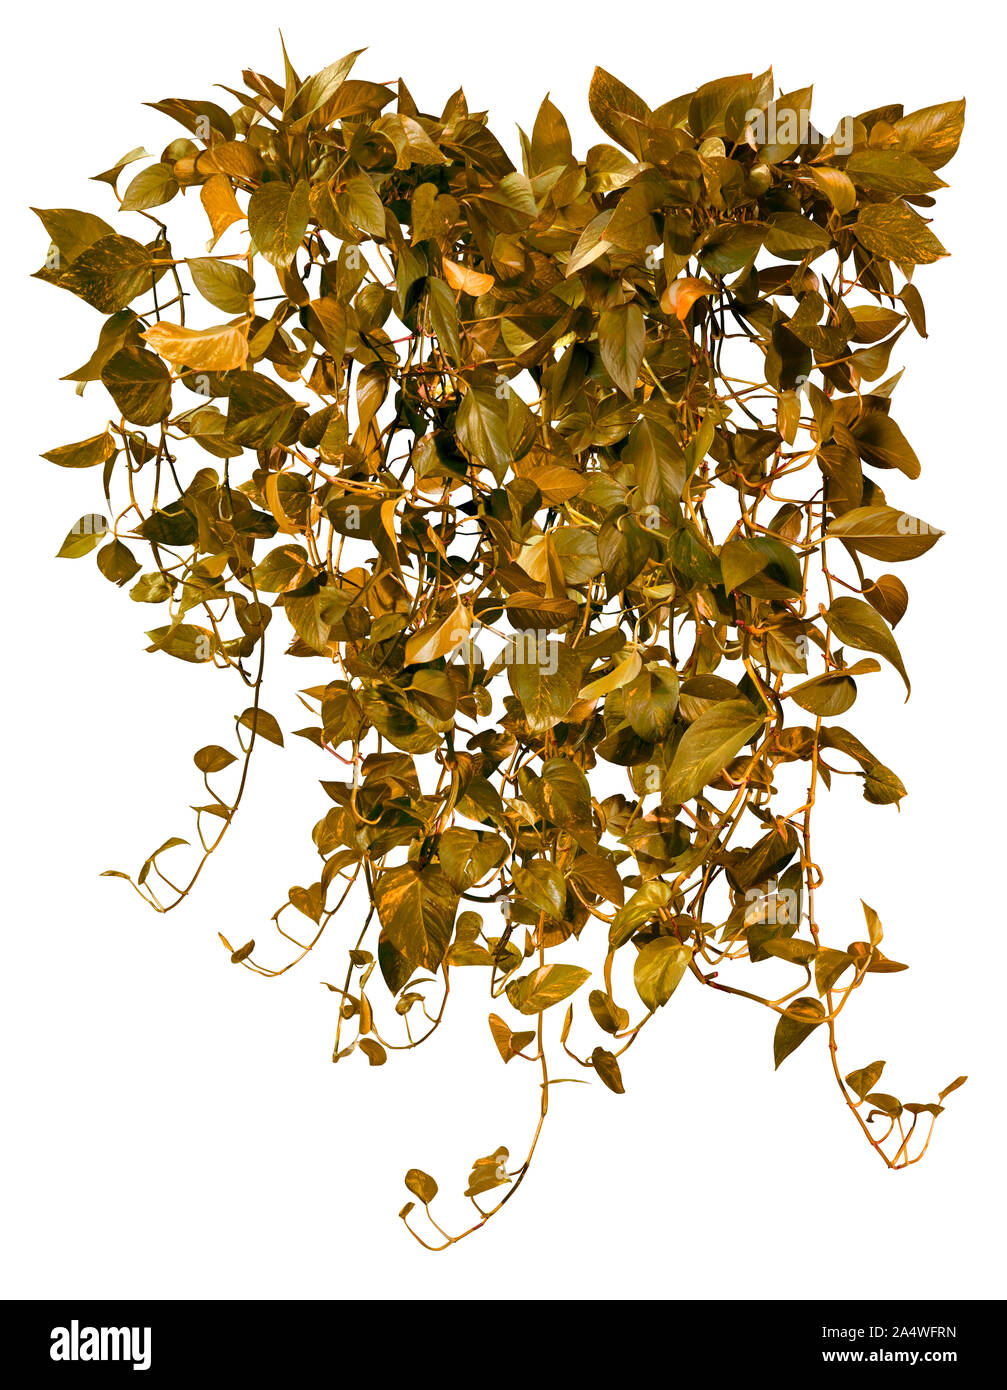 Ausschnitt jungle vIne. Ivy Laub im Herbst. Kletterpflanze auf weißem Hintergrund. Hochwertige wilden Reben Blätter für die professionelle Zusammensetzung. Stockfoto